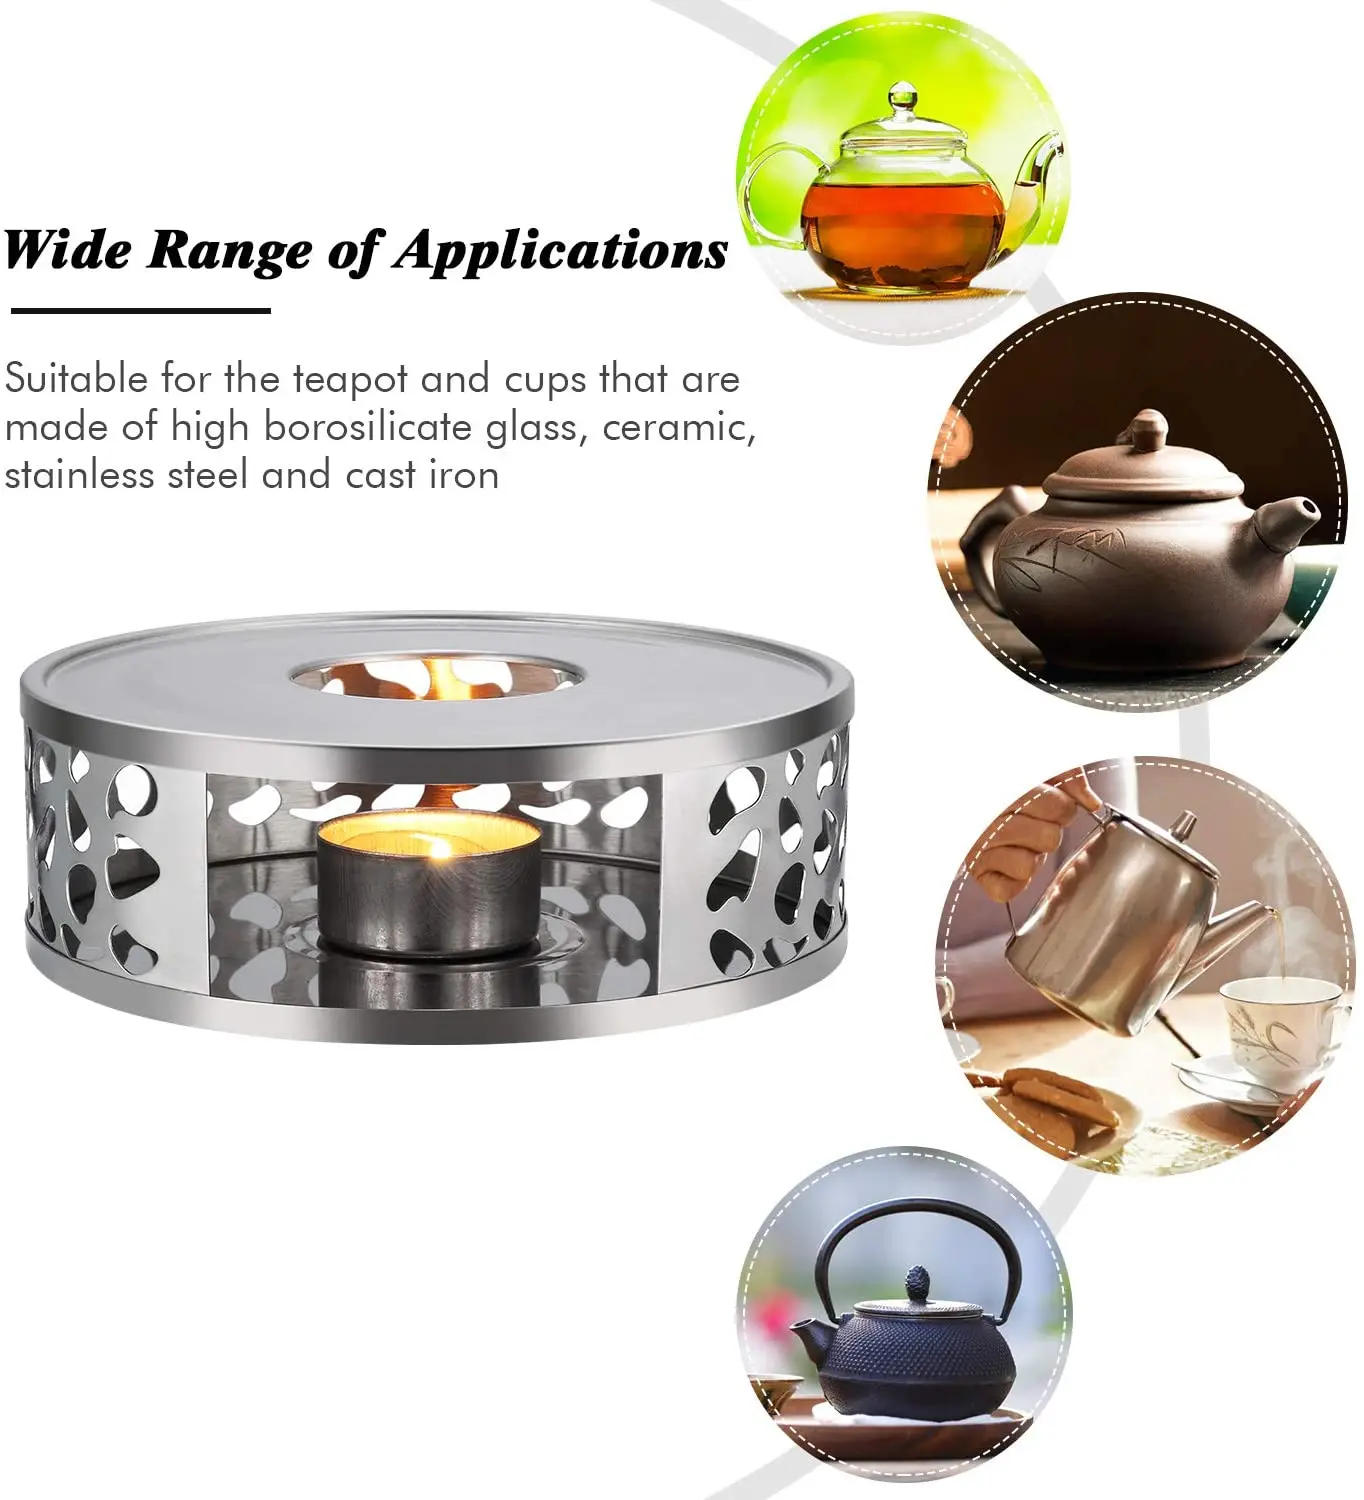 lumignons réservé-idéal pour maintenir la température Teapot-chaud 2x Acier Inoxydable Réchaud Incl